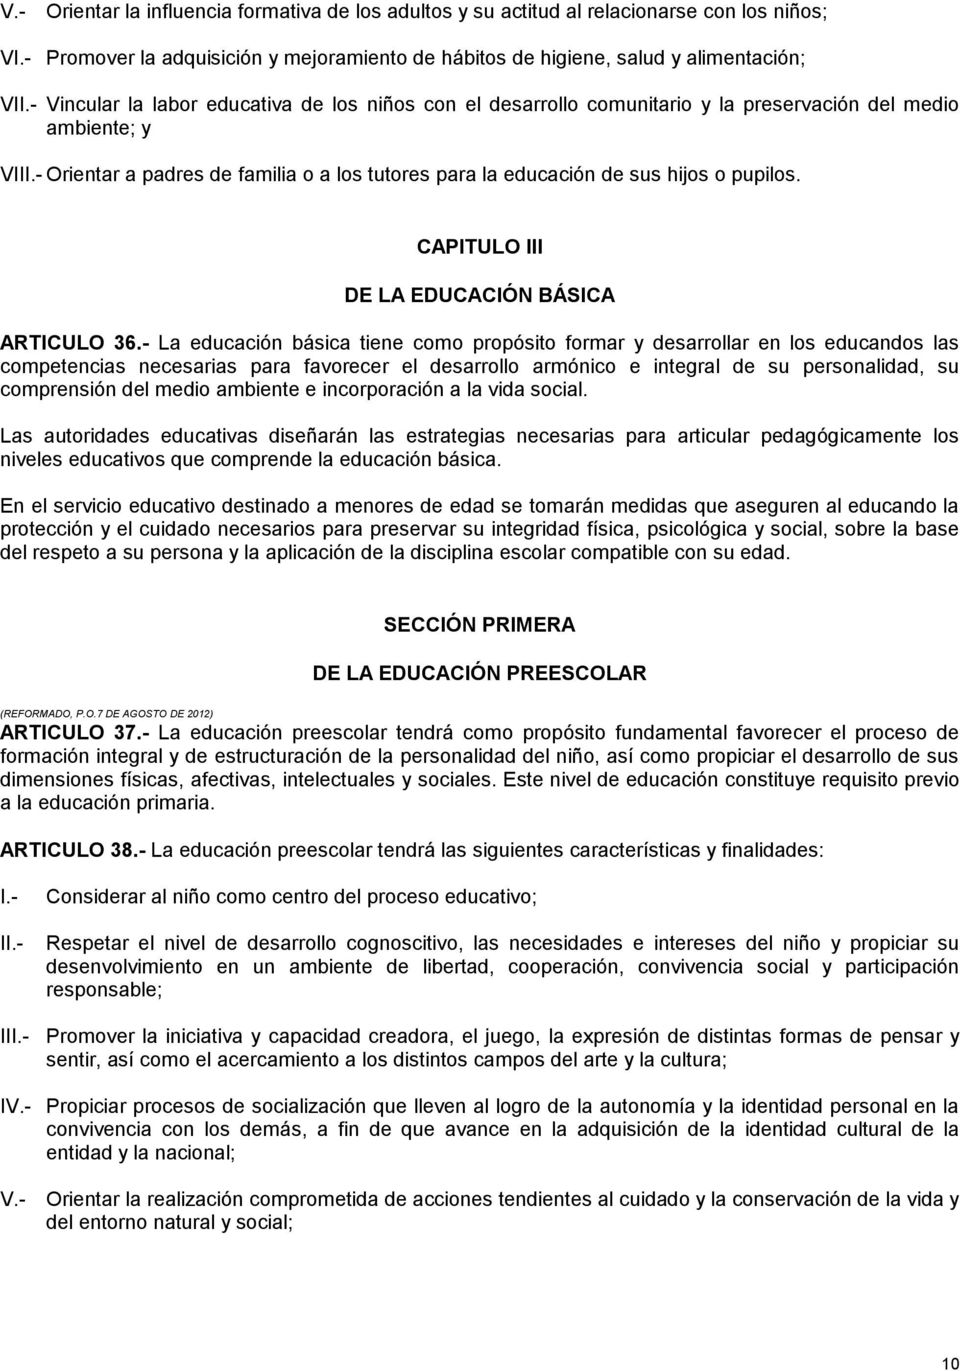 CAPITULO III DE LA EDUCACIÓN BÁSICA ARTICULO 36.